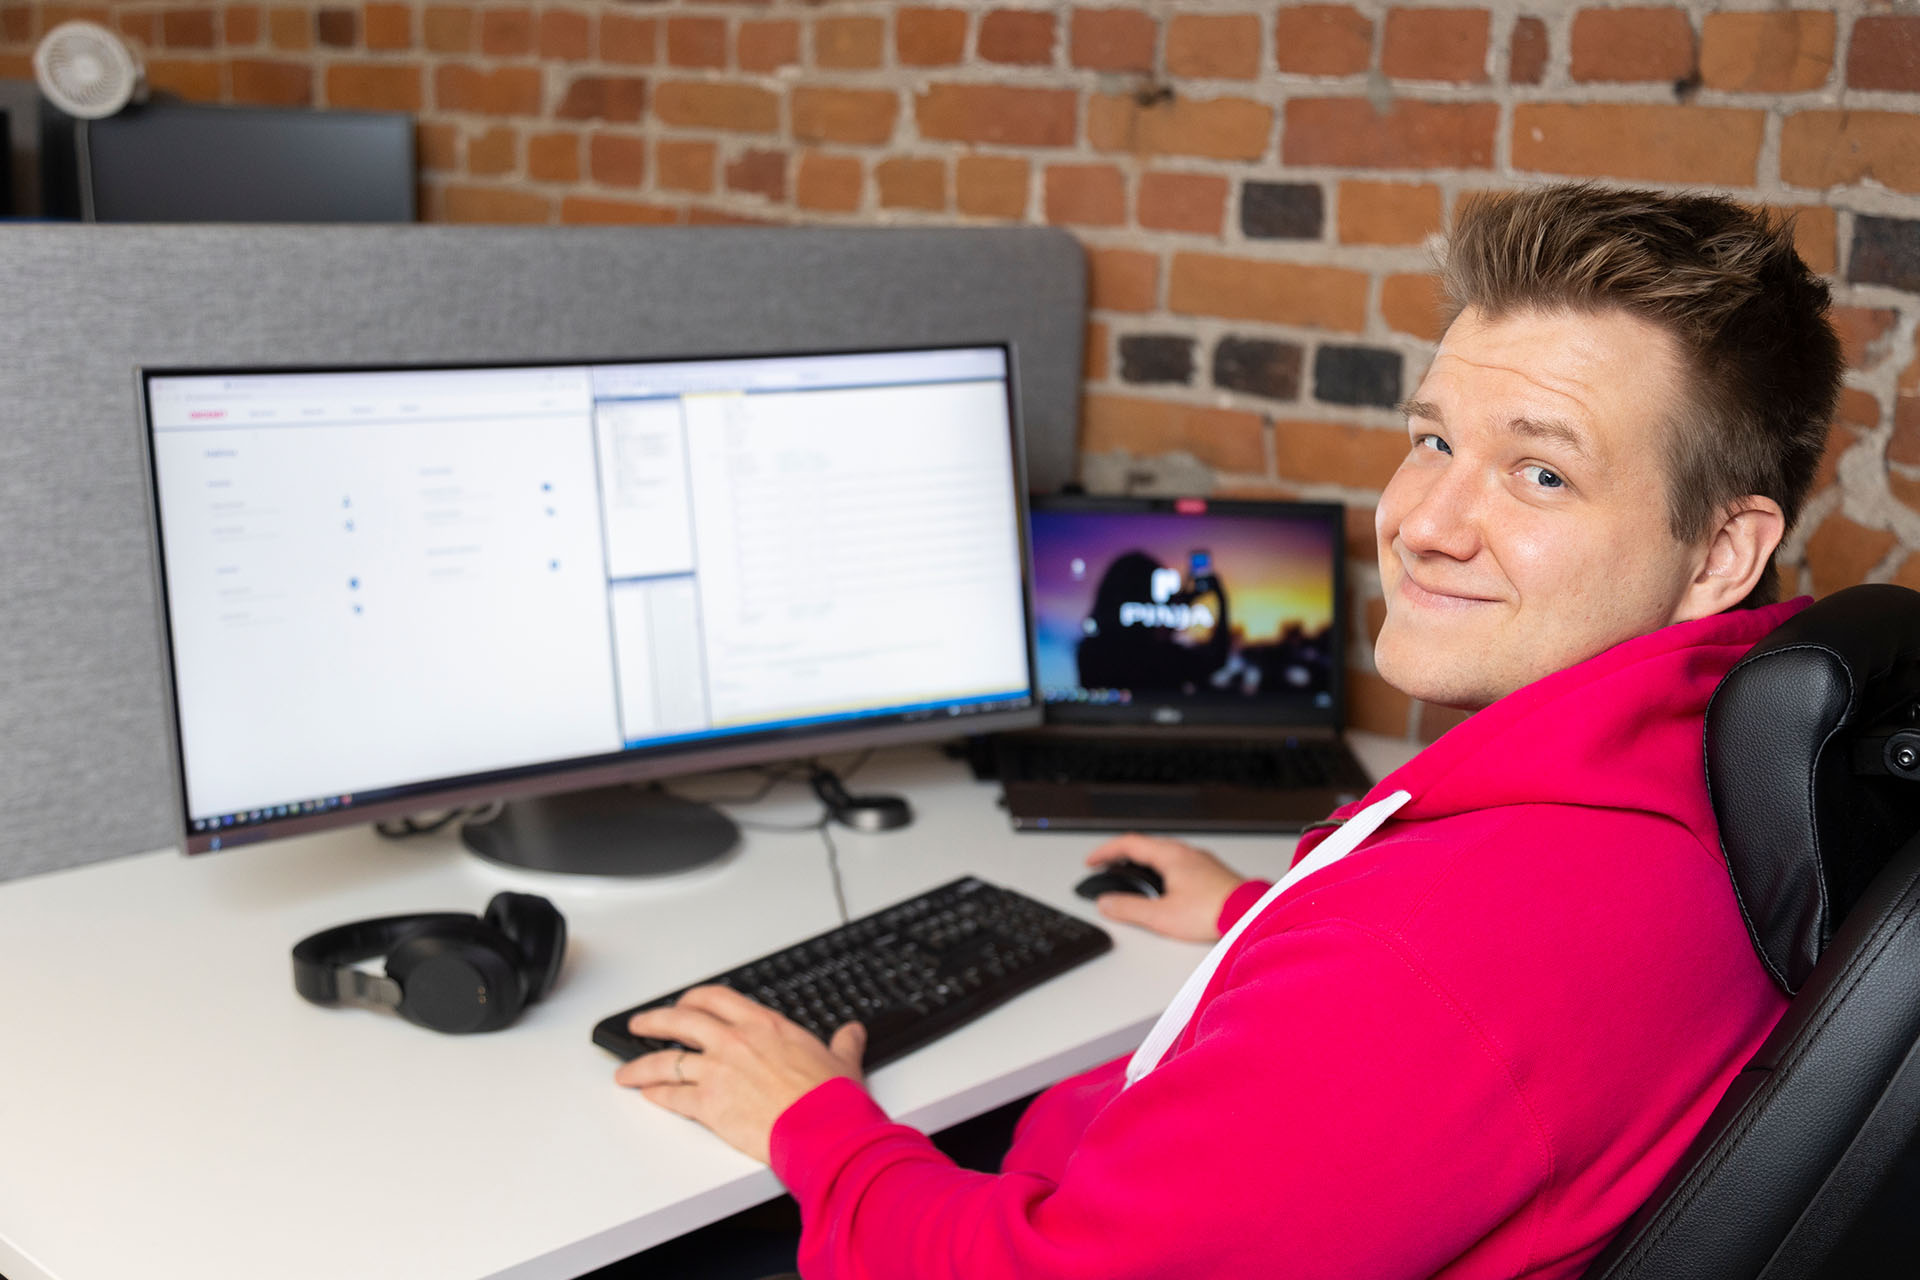 Mies pinkissä hupparissa istumassa tietokoneen ääressä kurkkaa olkansa yli kohti kameraa hymyillen